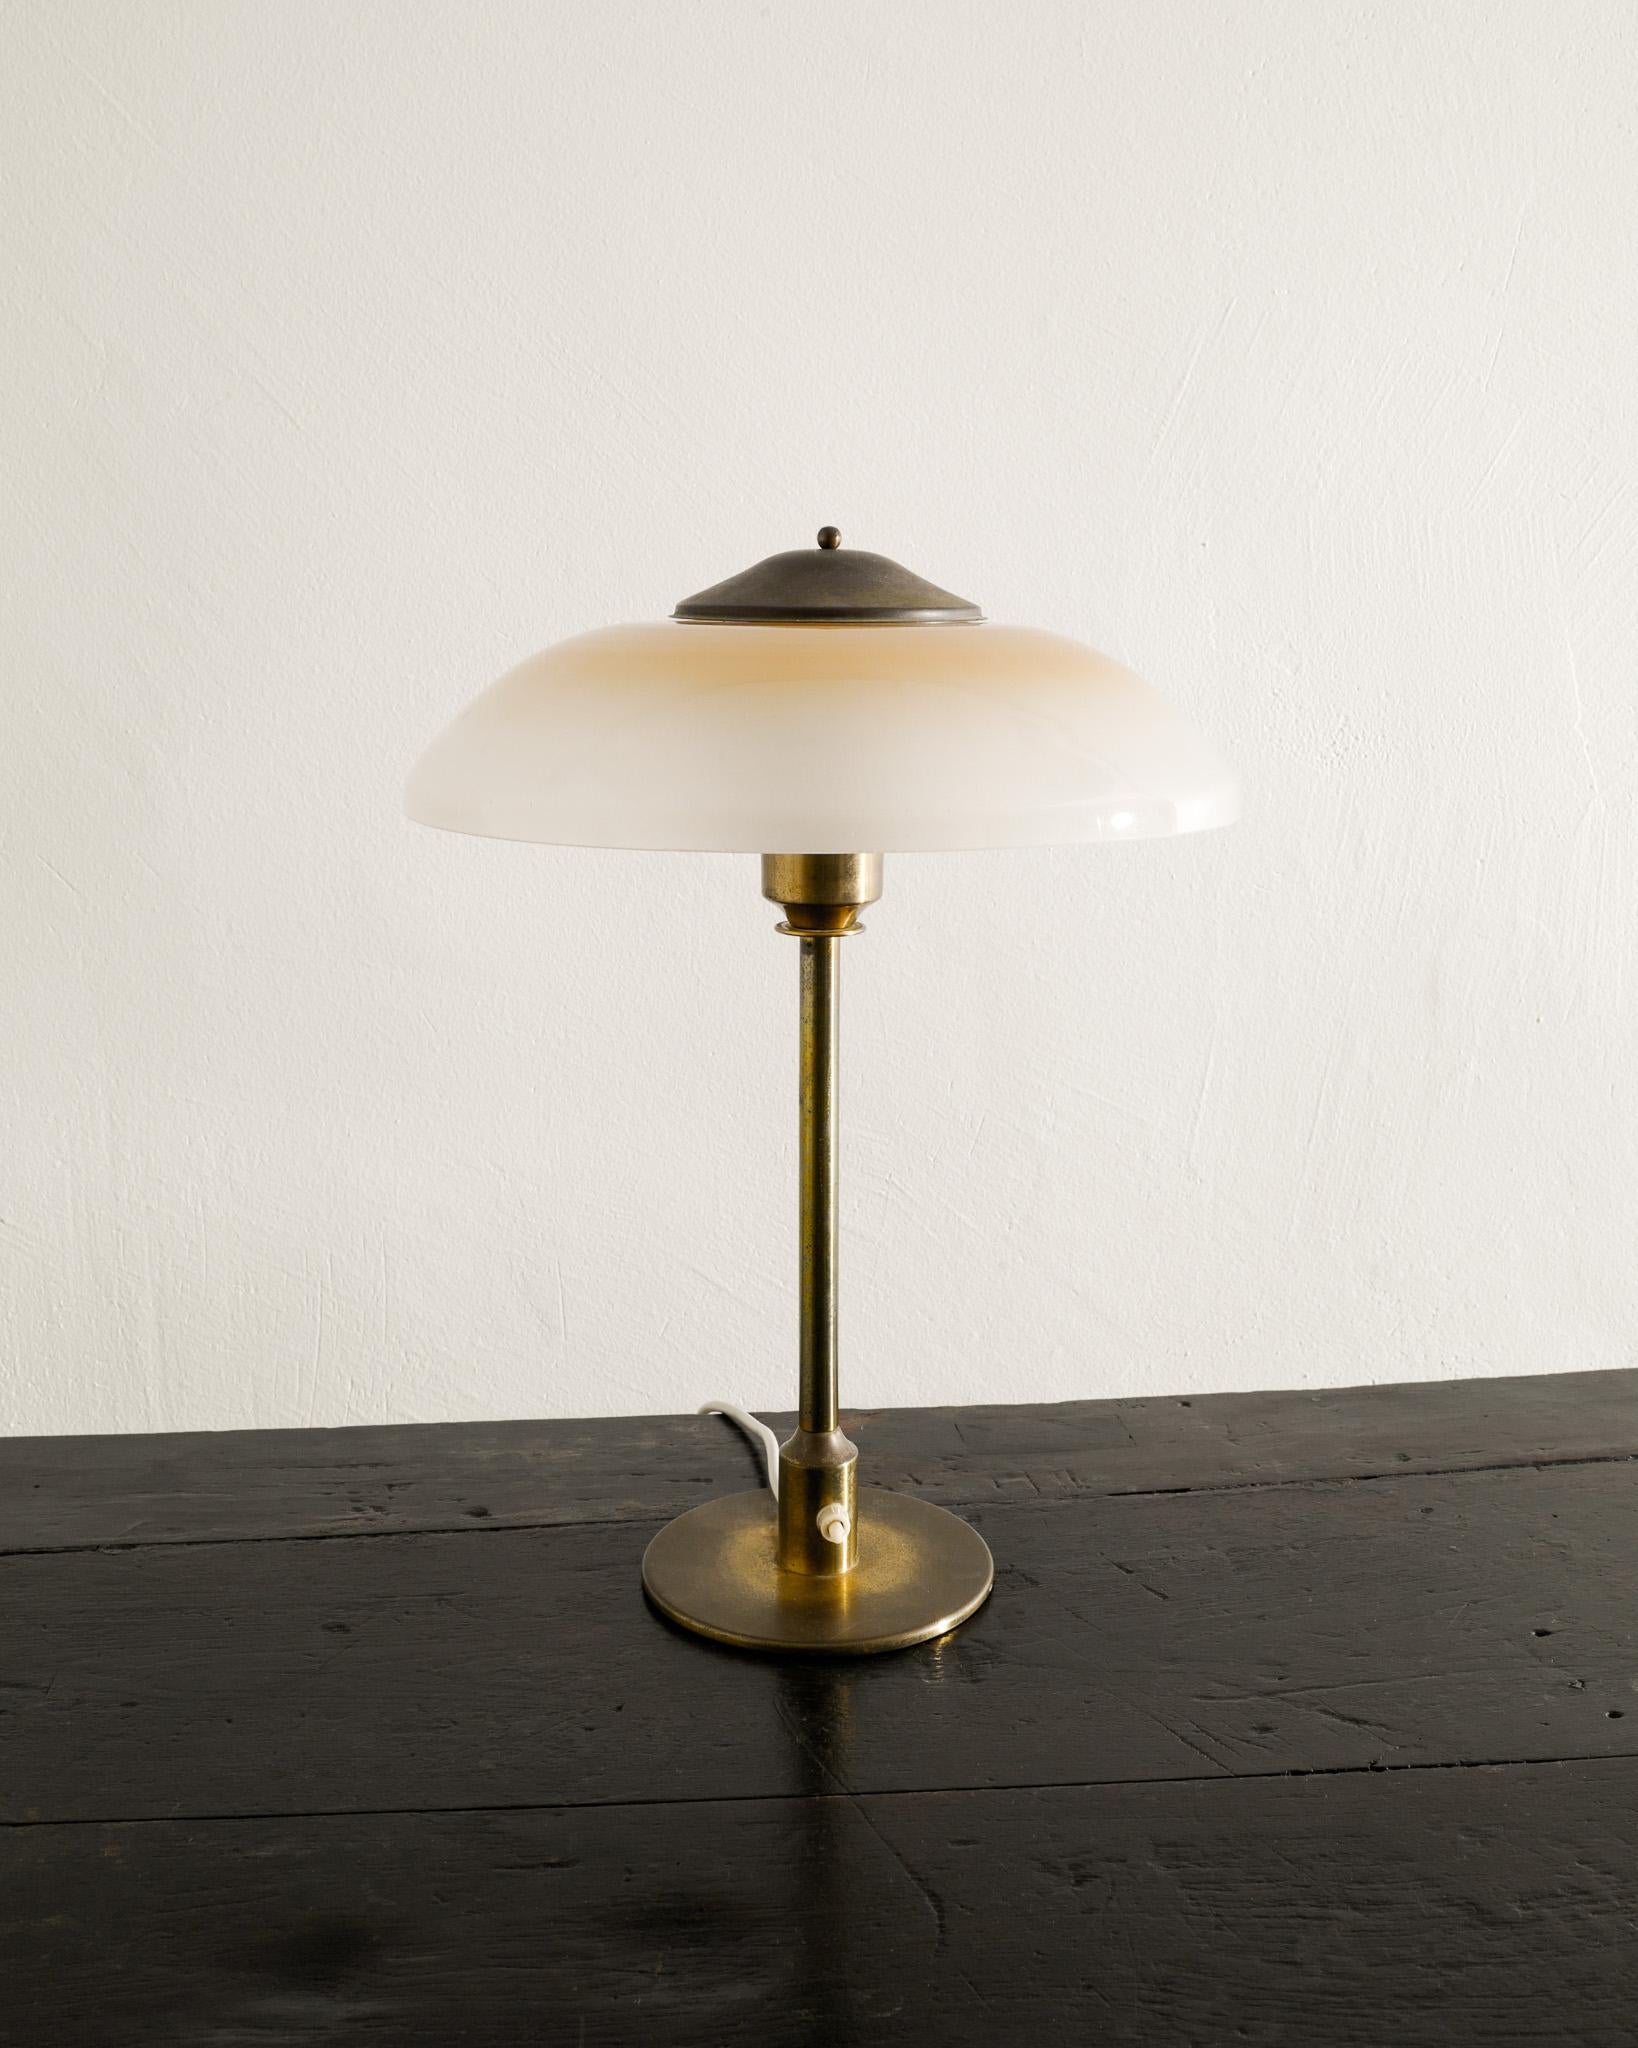 Scandinavian Modern Danish Mid Century Table Desk Lamp in Brass & Glass by Fog & Mørup Denmark 1950s For Sale